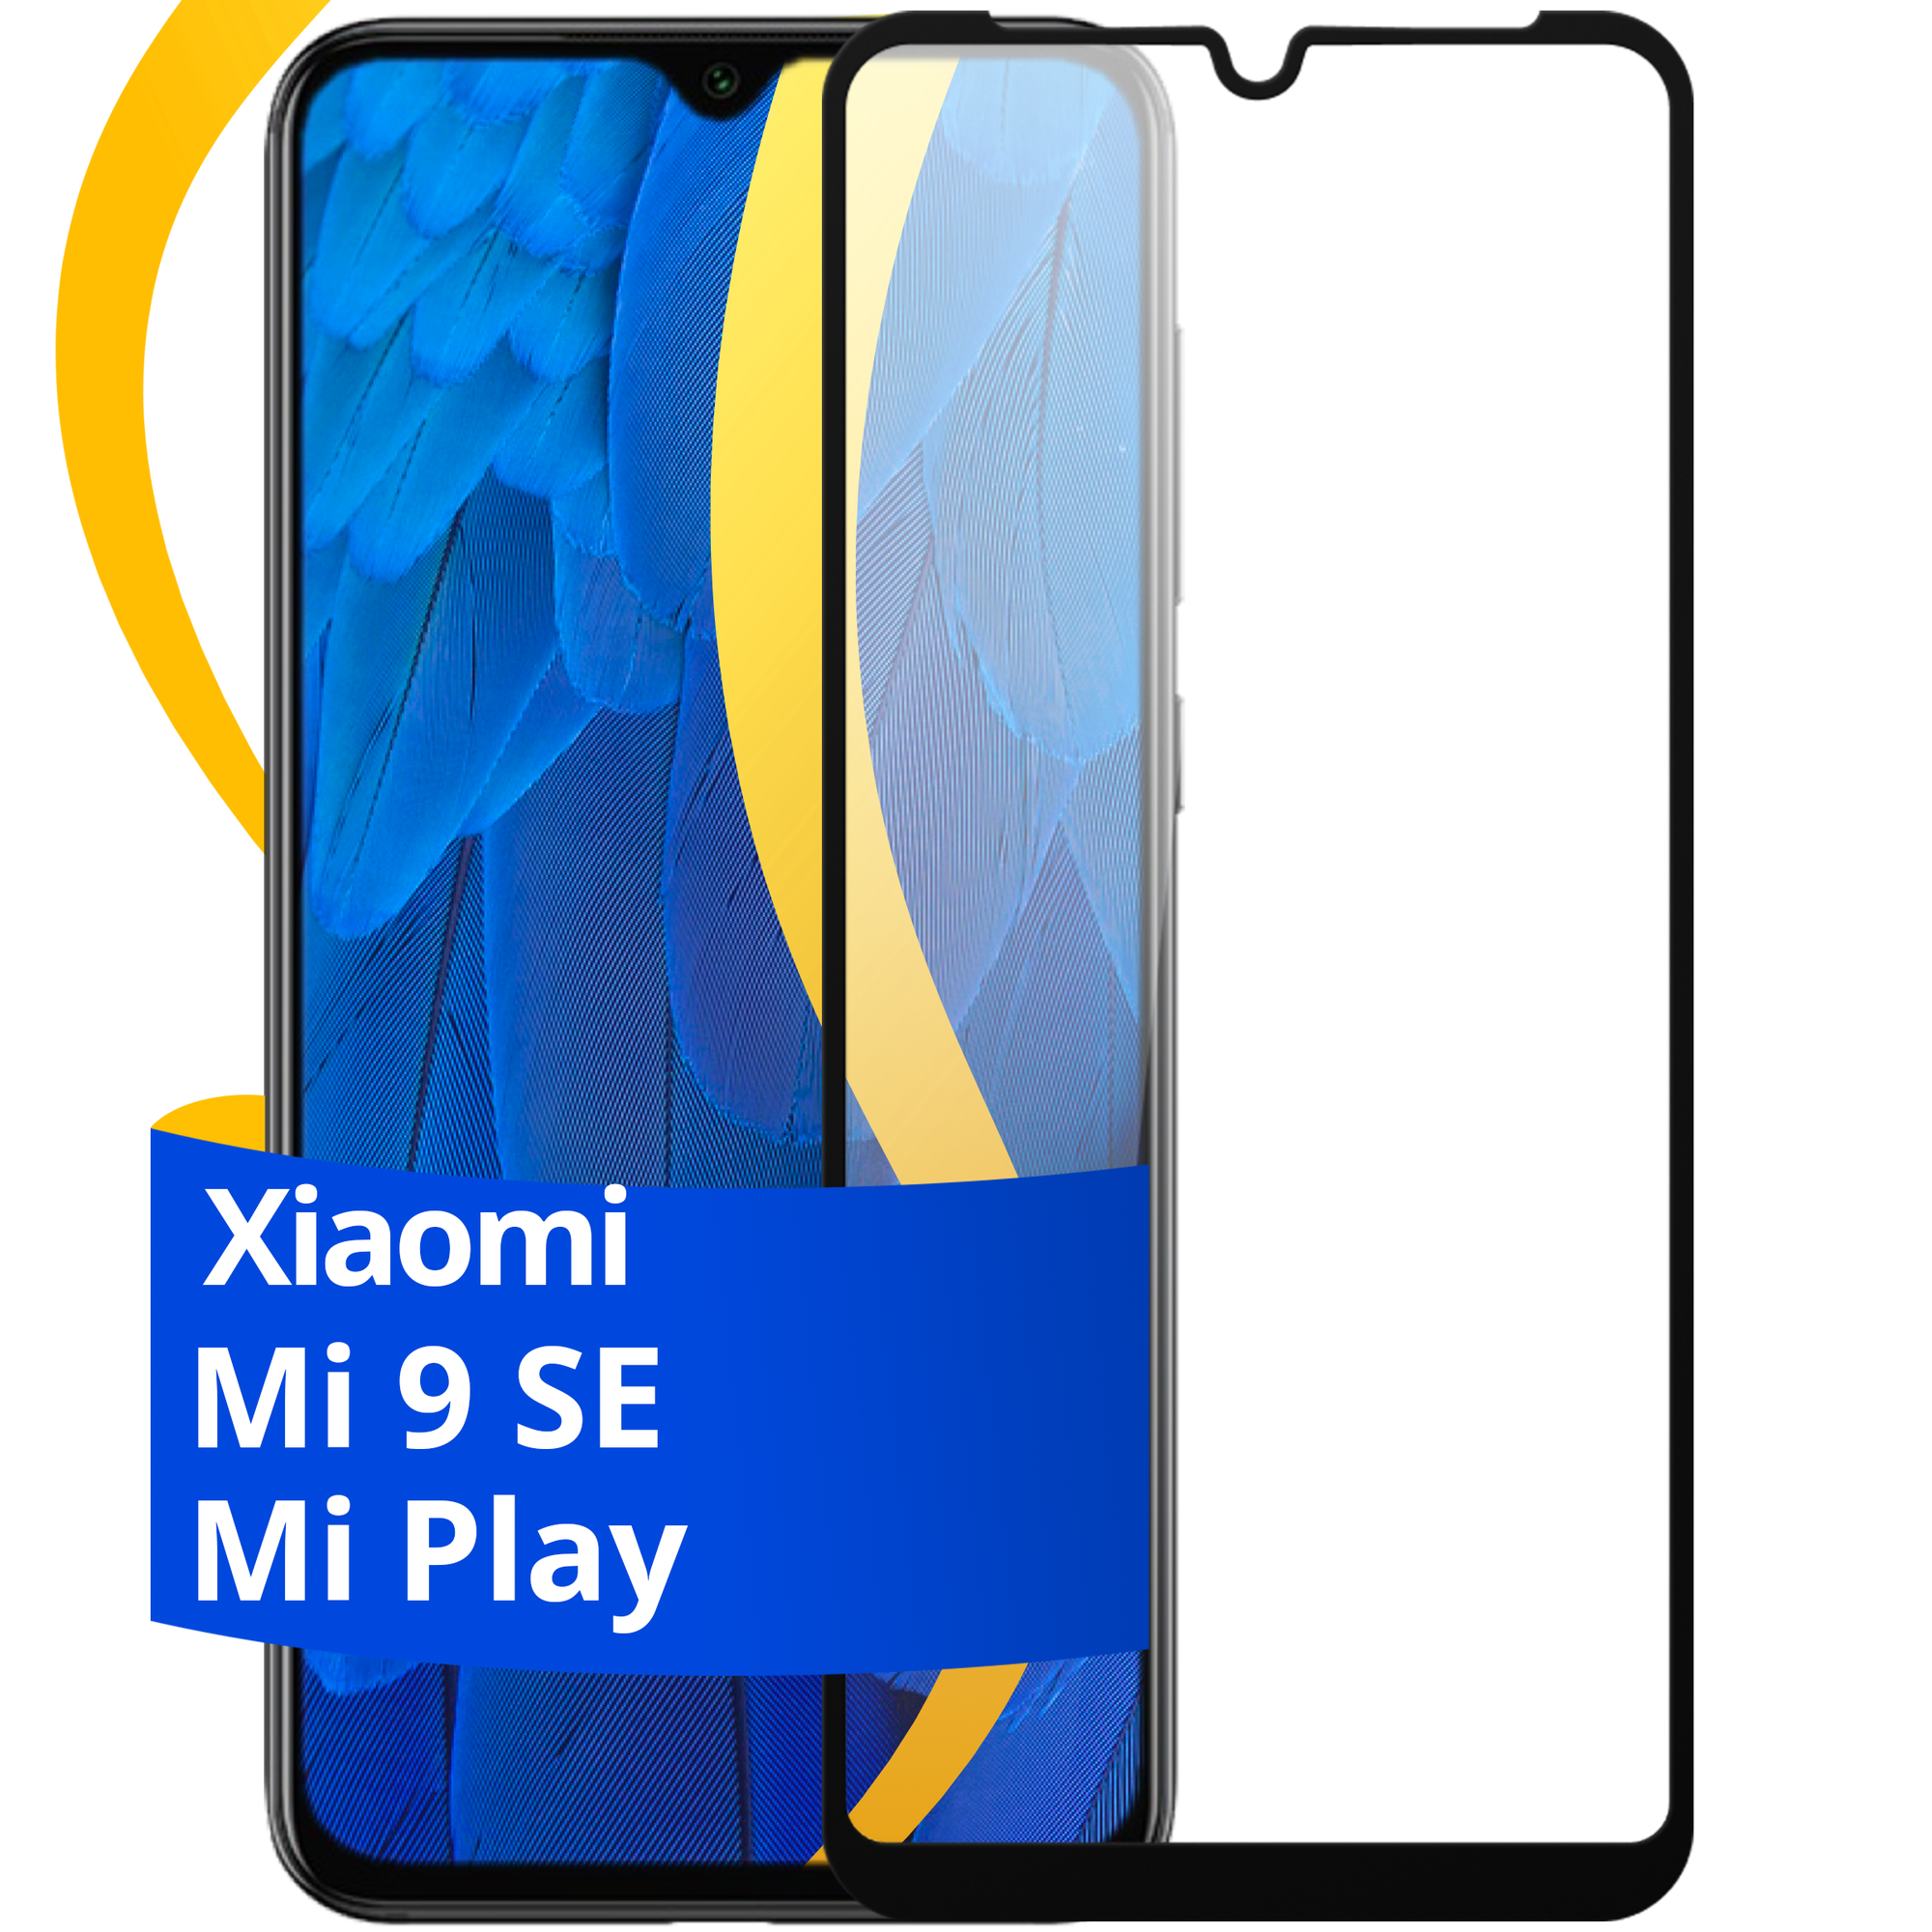 Глянцевое защитное стекло для телефона Xiaomi Mi 9 SE и Mi Play / Противоударное стекло с олеофобным покрытием на смартфон Сяоми Ми 9 СЕ и Ми Плей